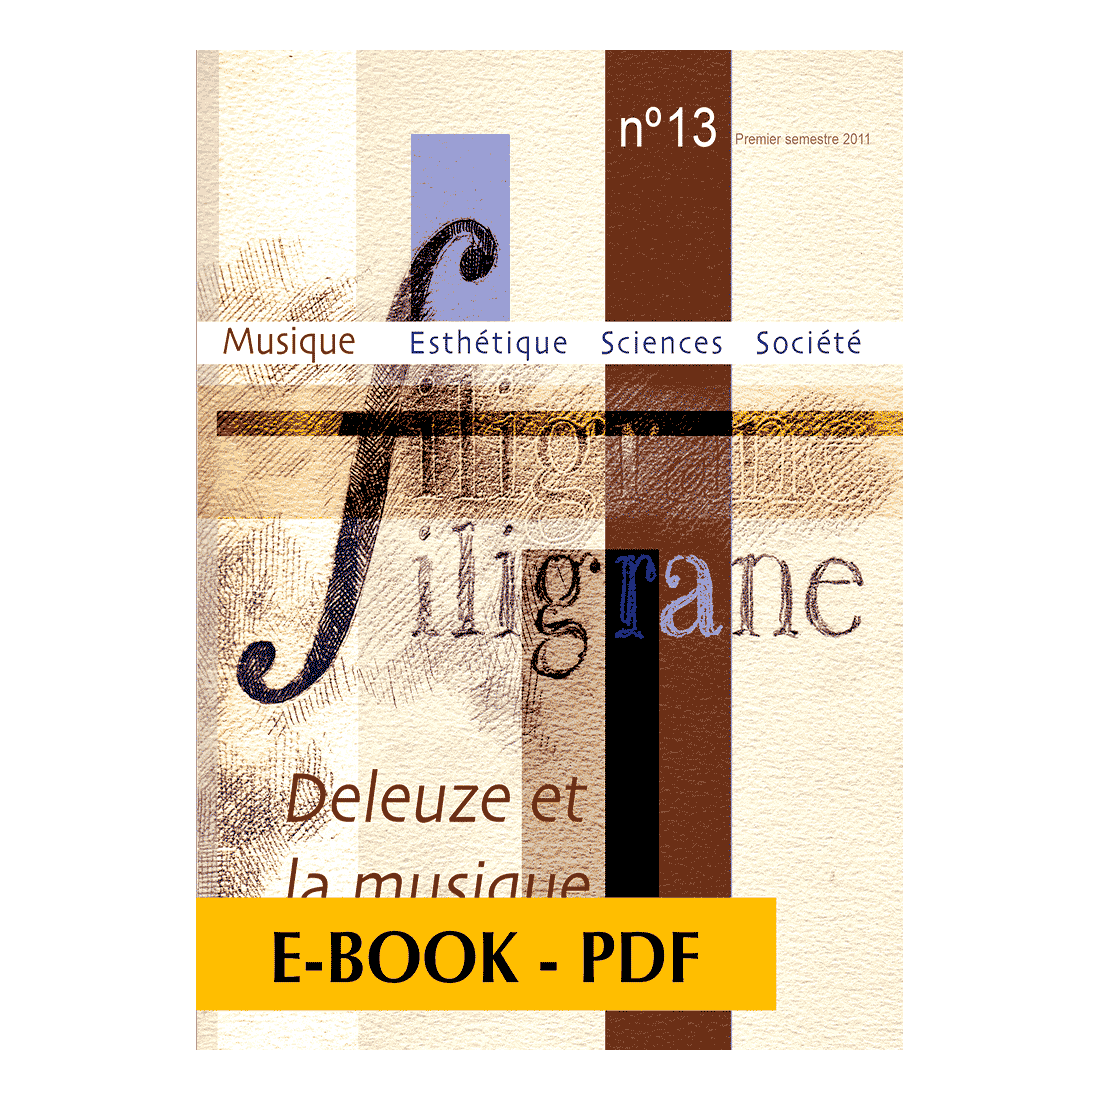 Revue Filigrane n°13 - Deleuze et la musique - E-book PDF